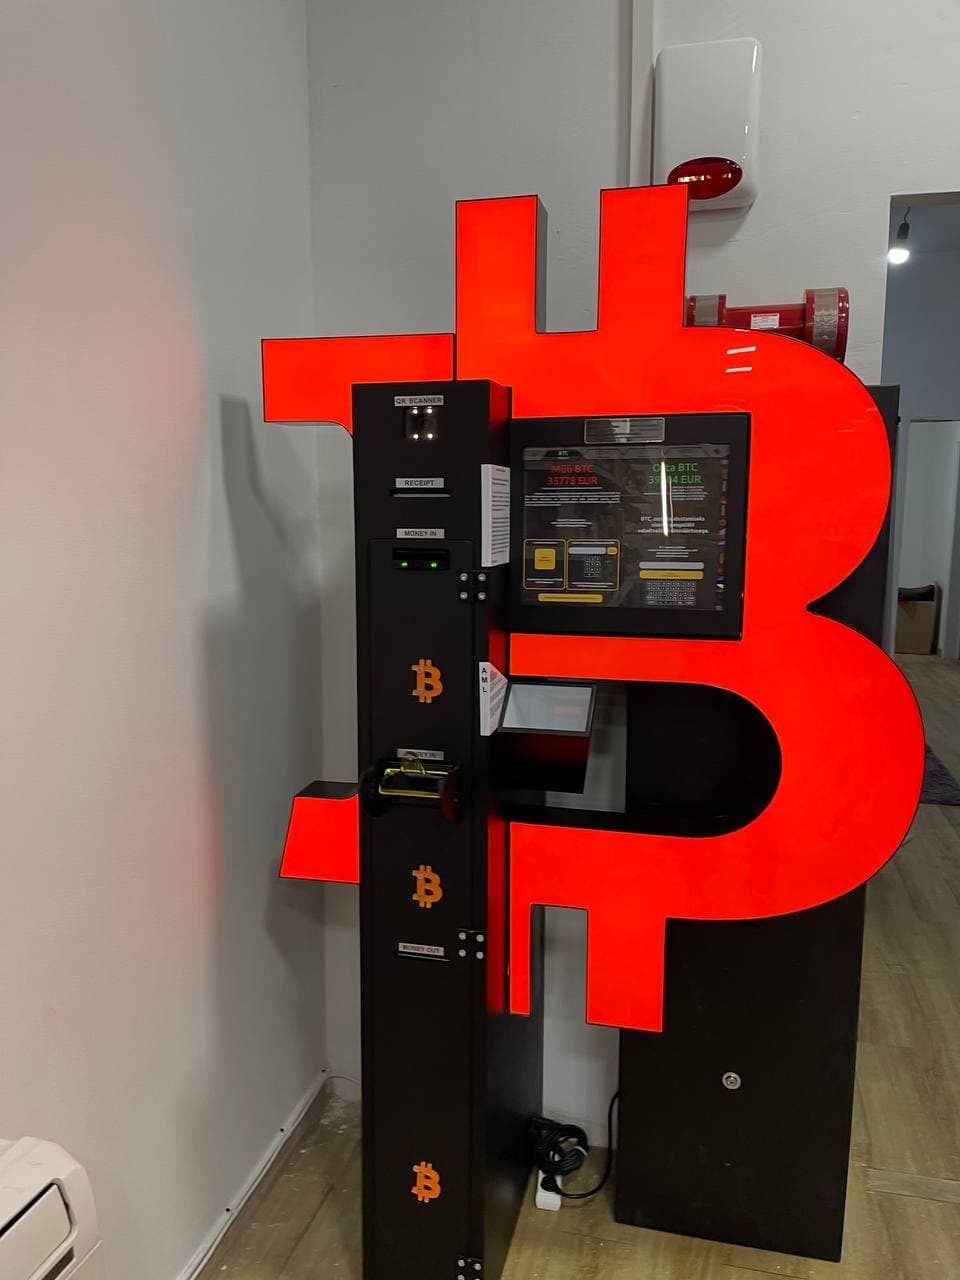 Bitcoin geldautomaatin het pand aan de Anspachlaan, fotonummer 1